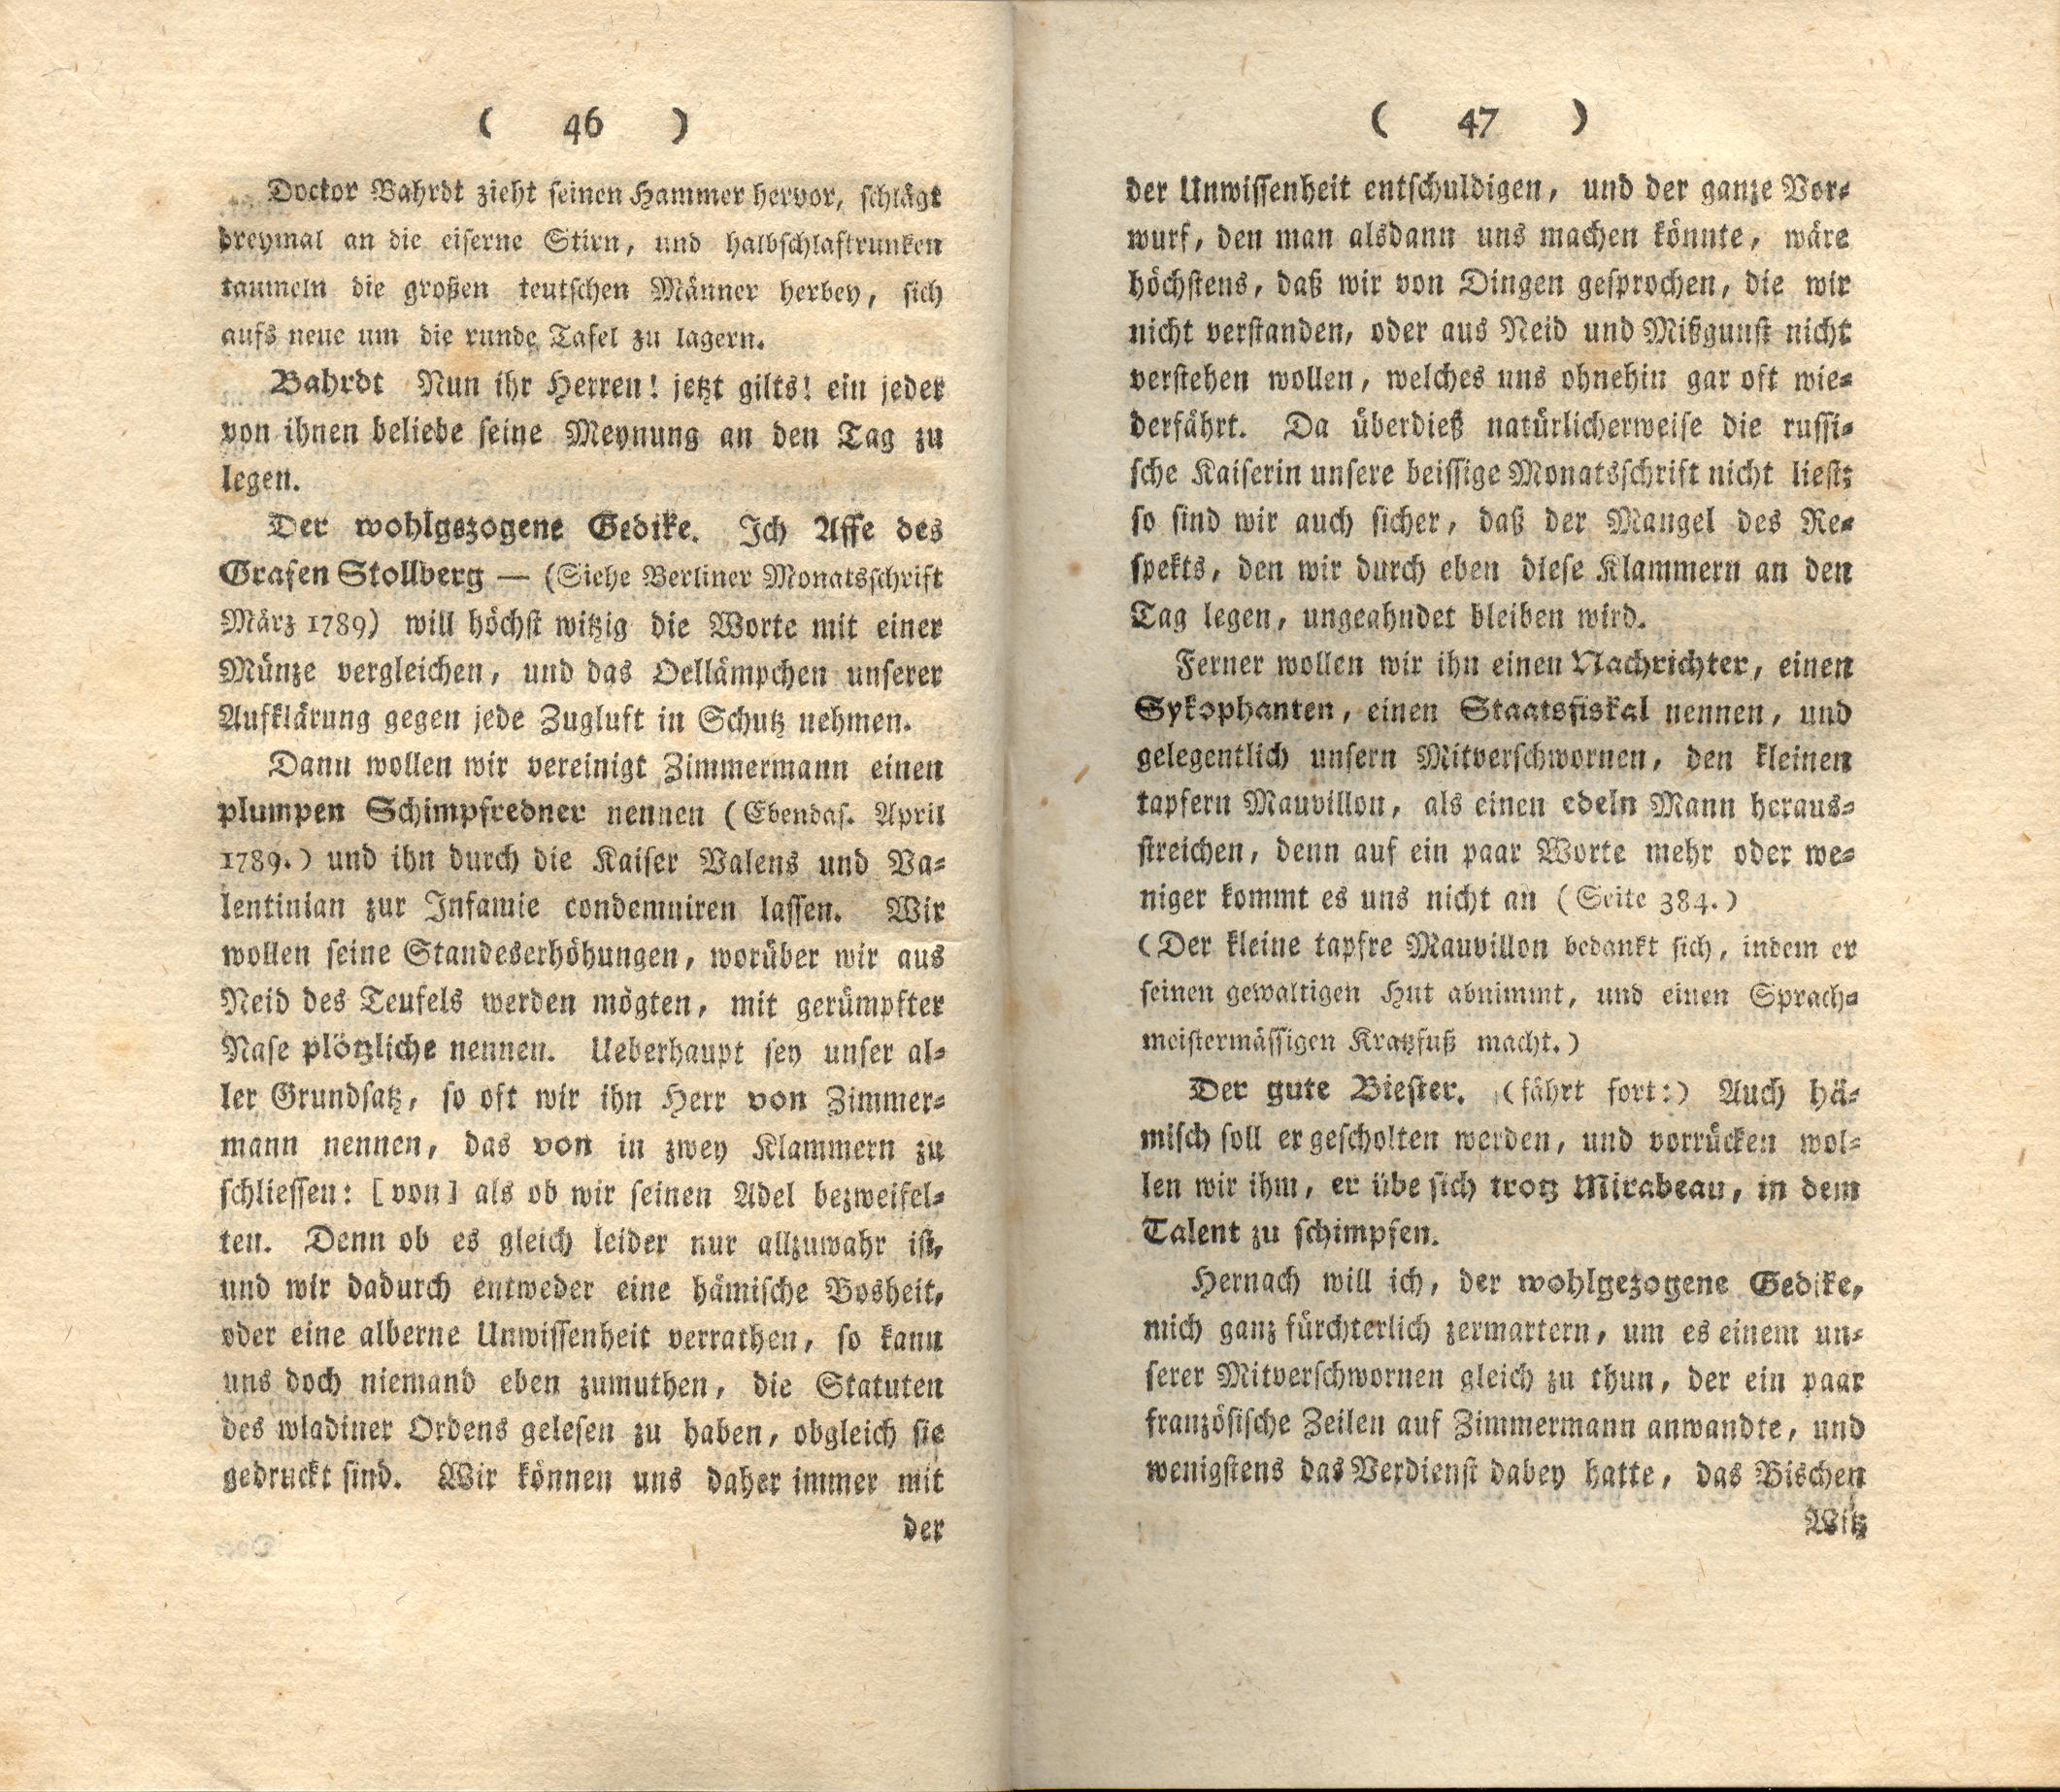 Doctor Bahrdt mit der eisernen Stirn (1790) | 25. (46-47) Main body of text